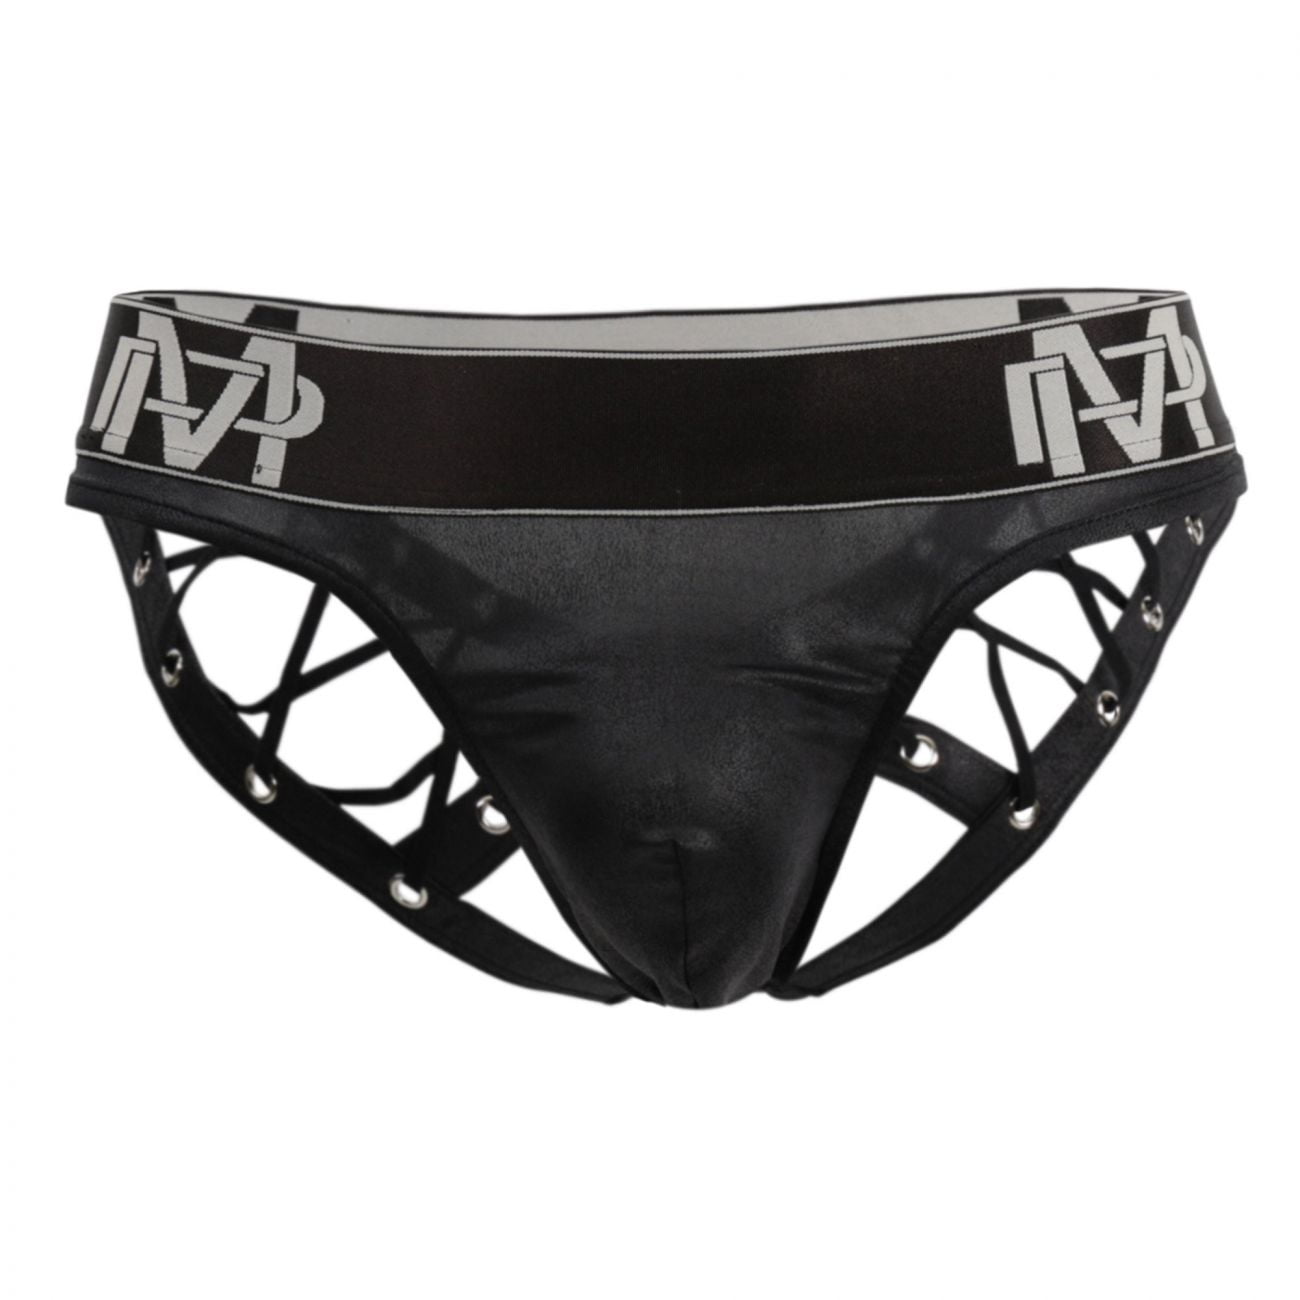 Andrew Scott Mens 18 Pack Hot Tanga Athletic Sport Bikini Underwear